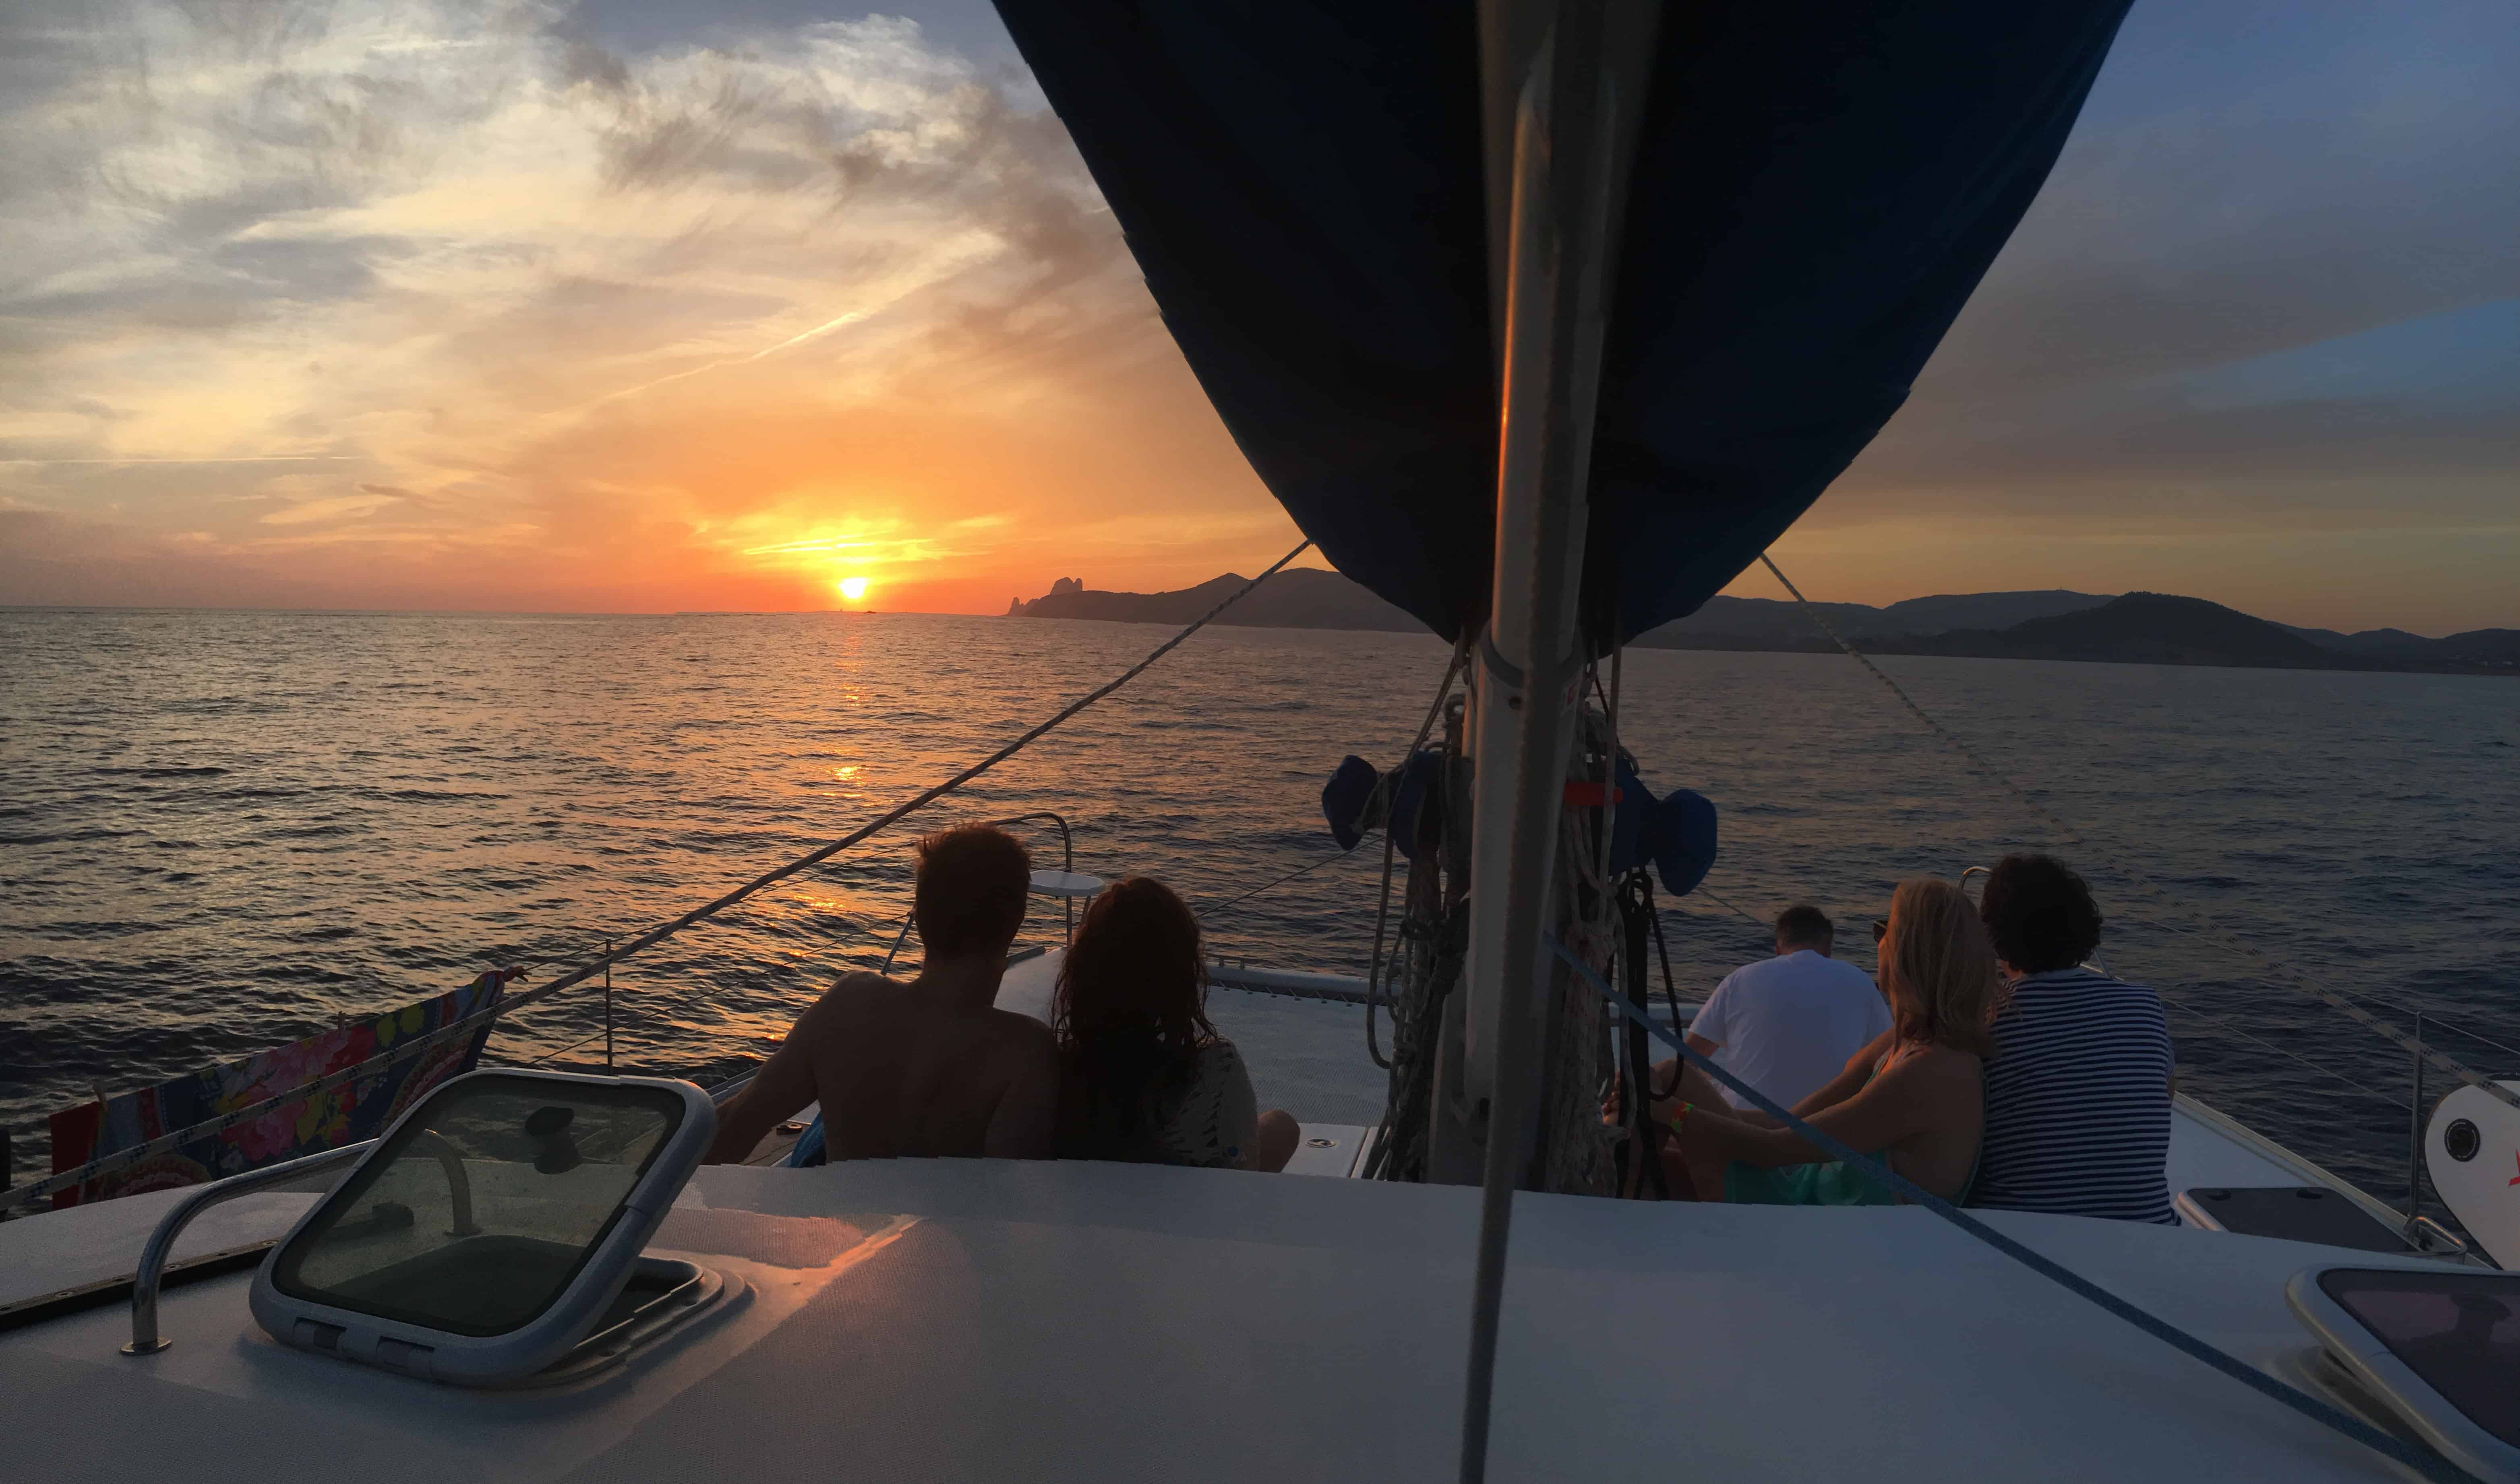 Location catamarán á Ibiza - Groupe assis sur le filet profitant du coucher de soleil en naviguant vers Ibiza depuis Formentera.